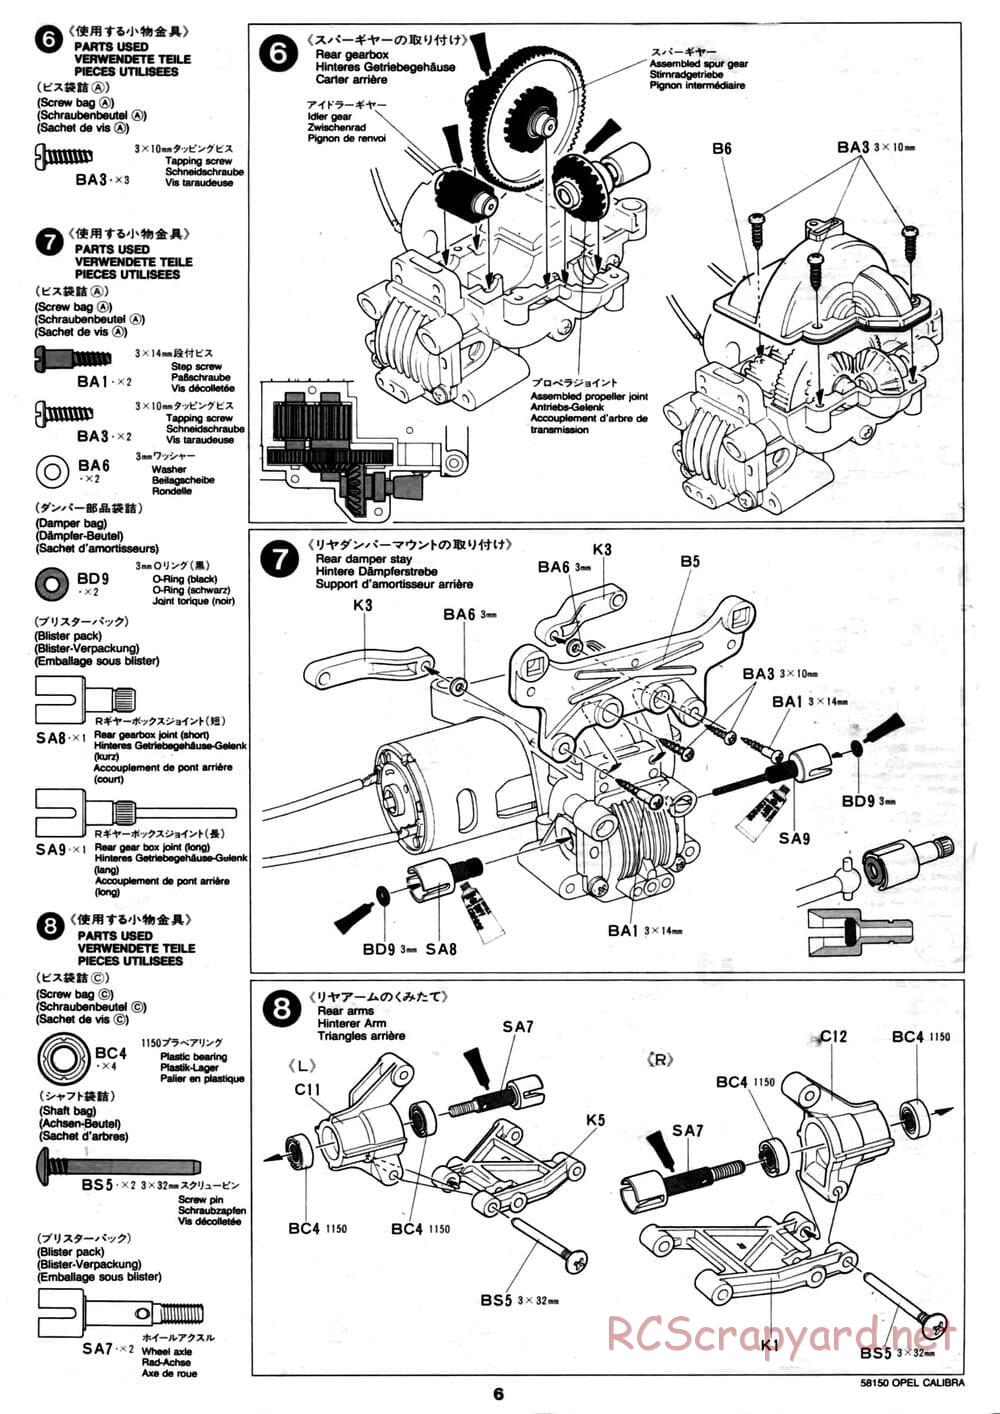 Tamiya - Opel Calibra V6 DTM - TA-02 Chassis - Manual - Page 6